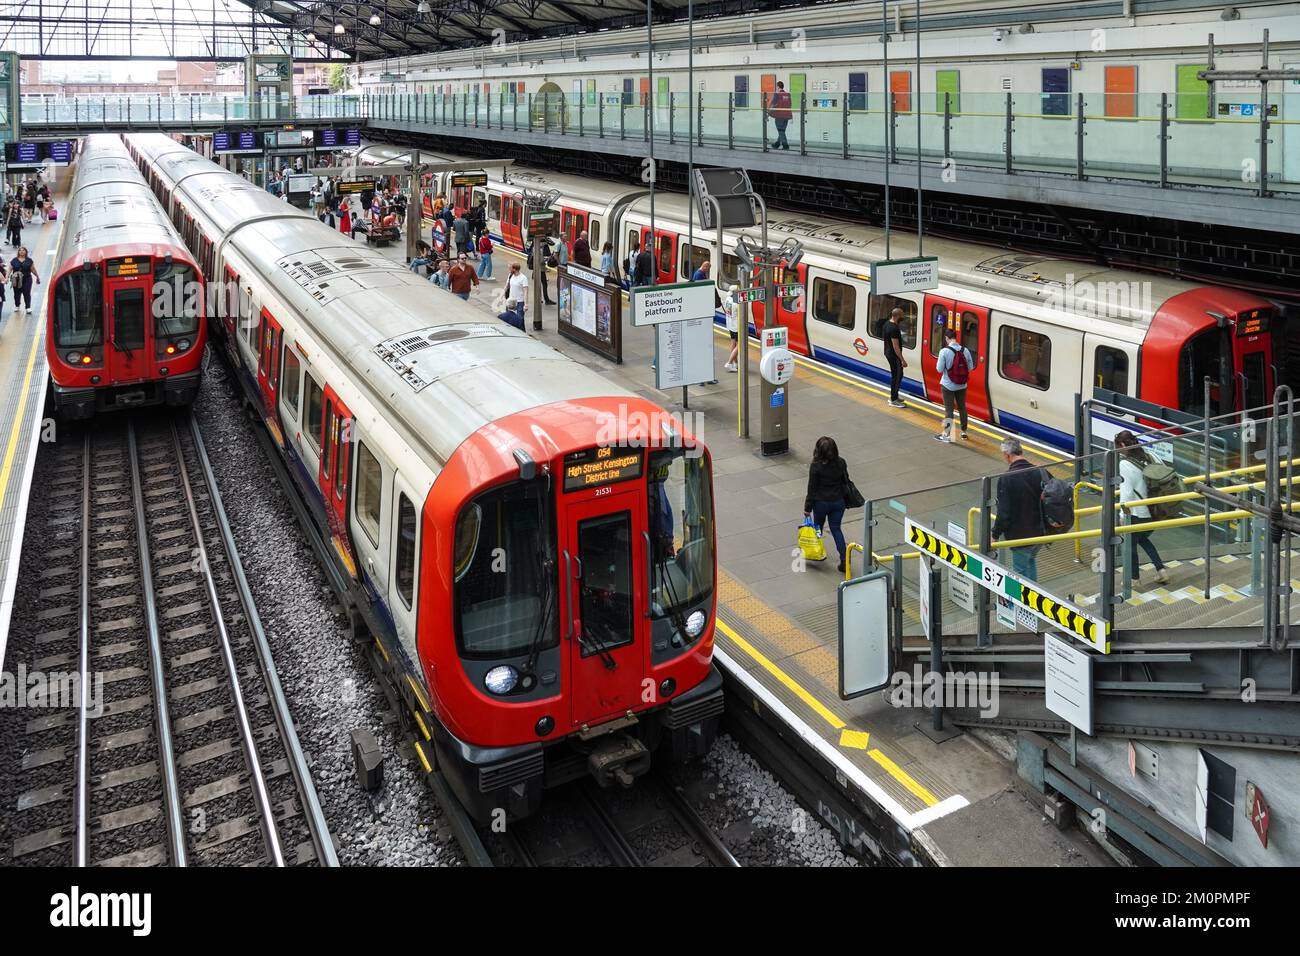 Passeggeri sul binario della metropolitana di Earl's Court, stazione della metropolitana Londra Inghilterra Regno Unito Regno Unito Foto Stock